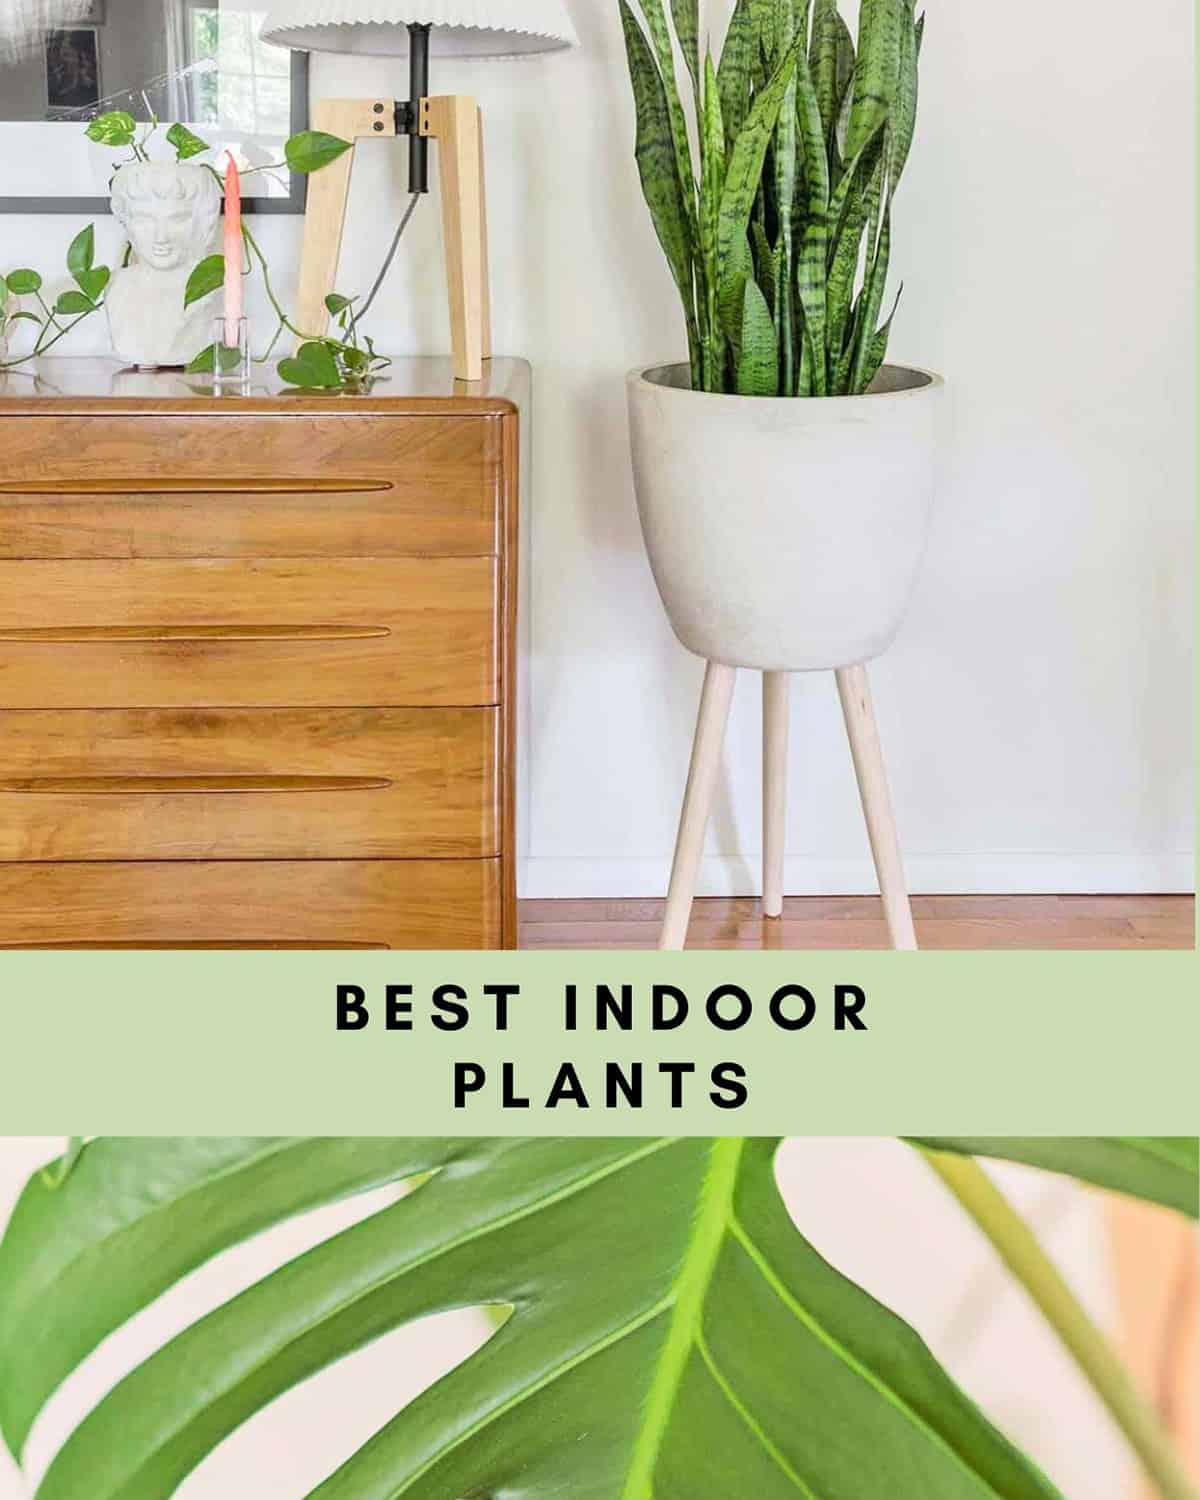 Best Indoor Plants for low light